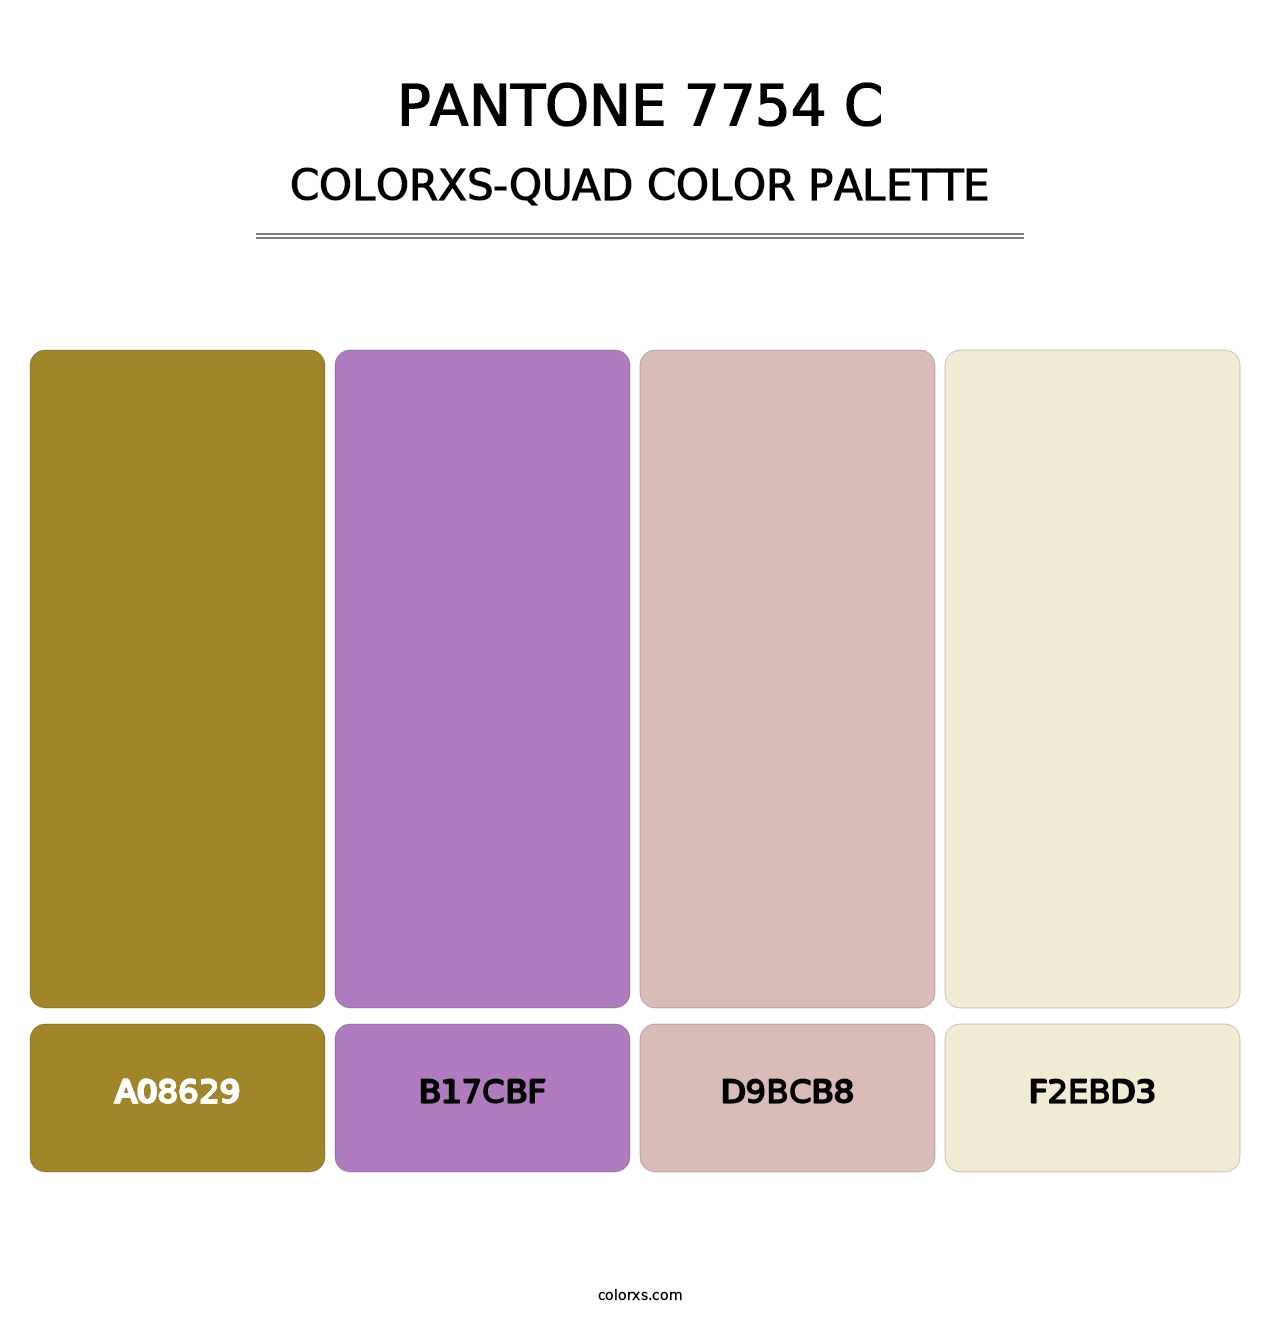 PANTONE 7754 C - Colorxs Quad Palette